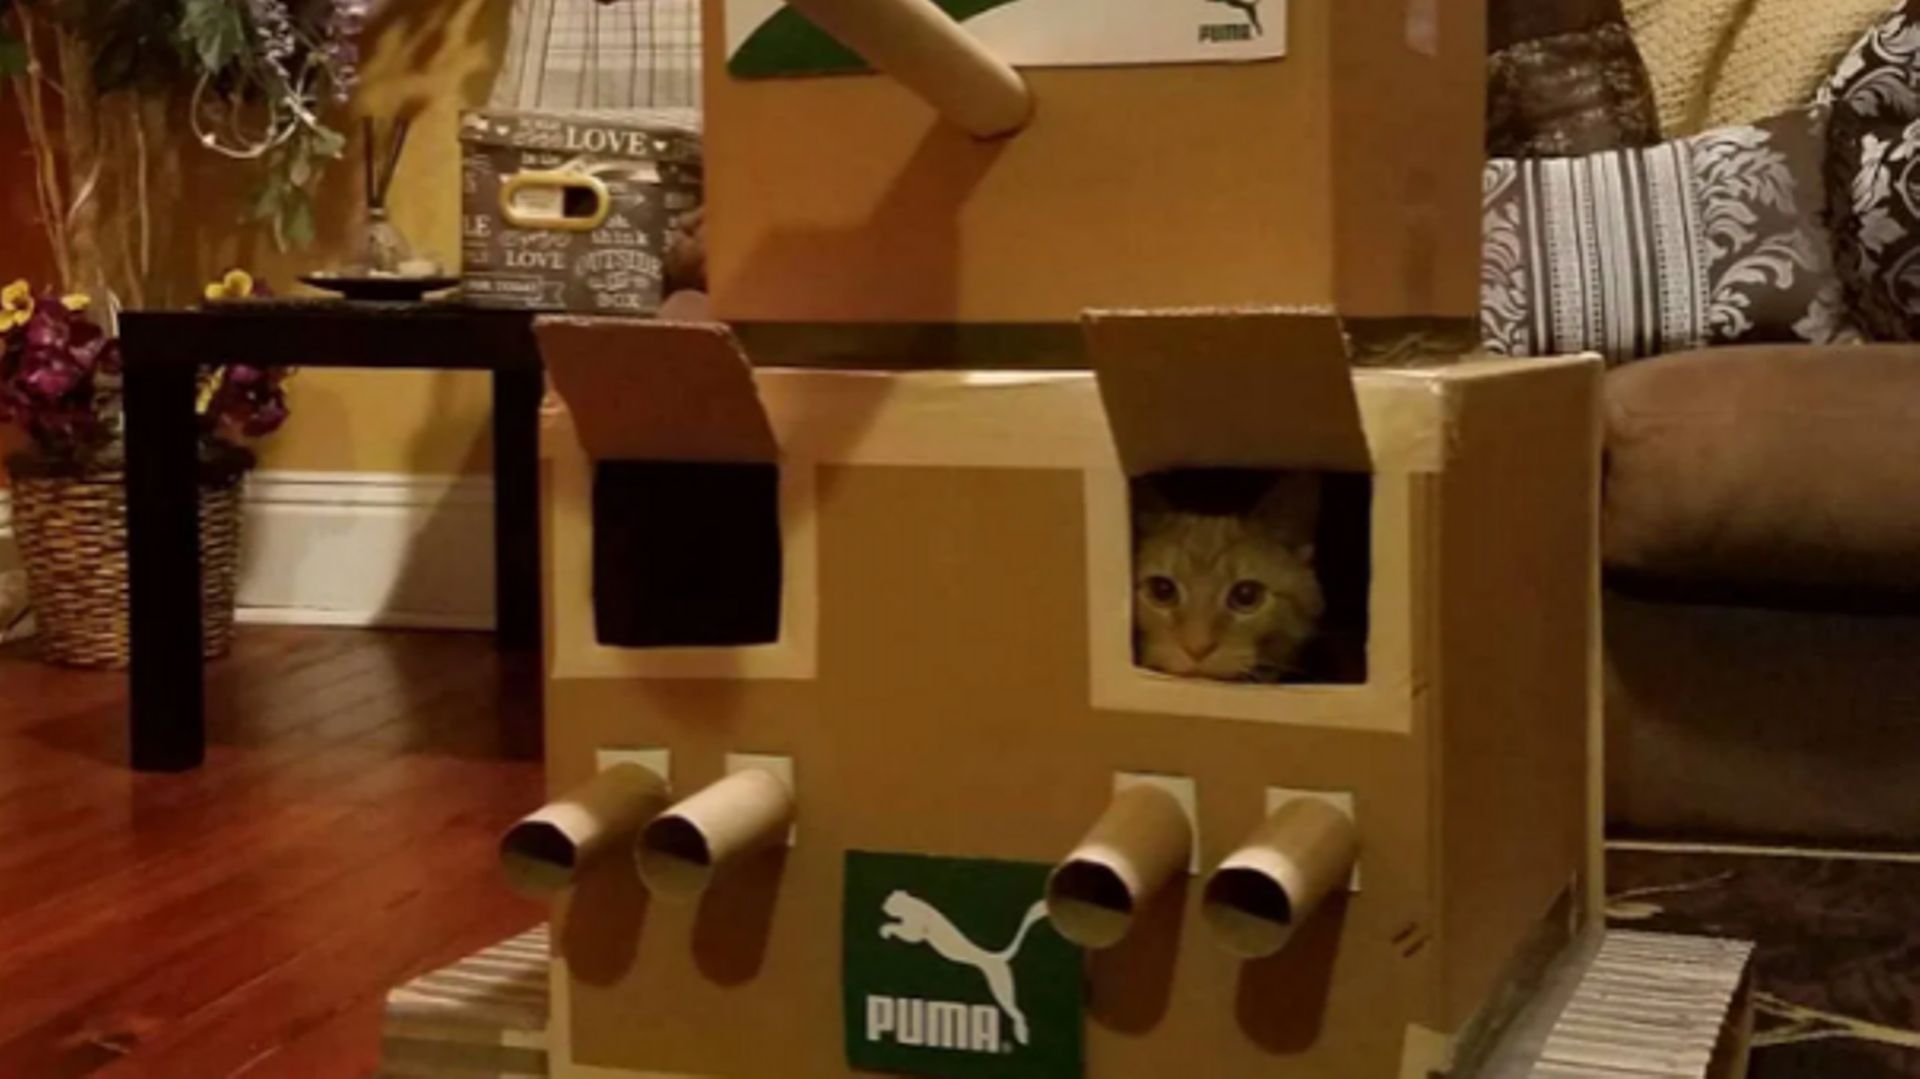 Le nouveau challenge qui "cartonne", construire un tank en carton pour son chat